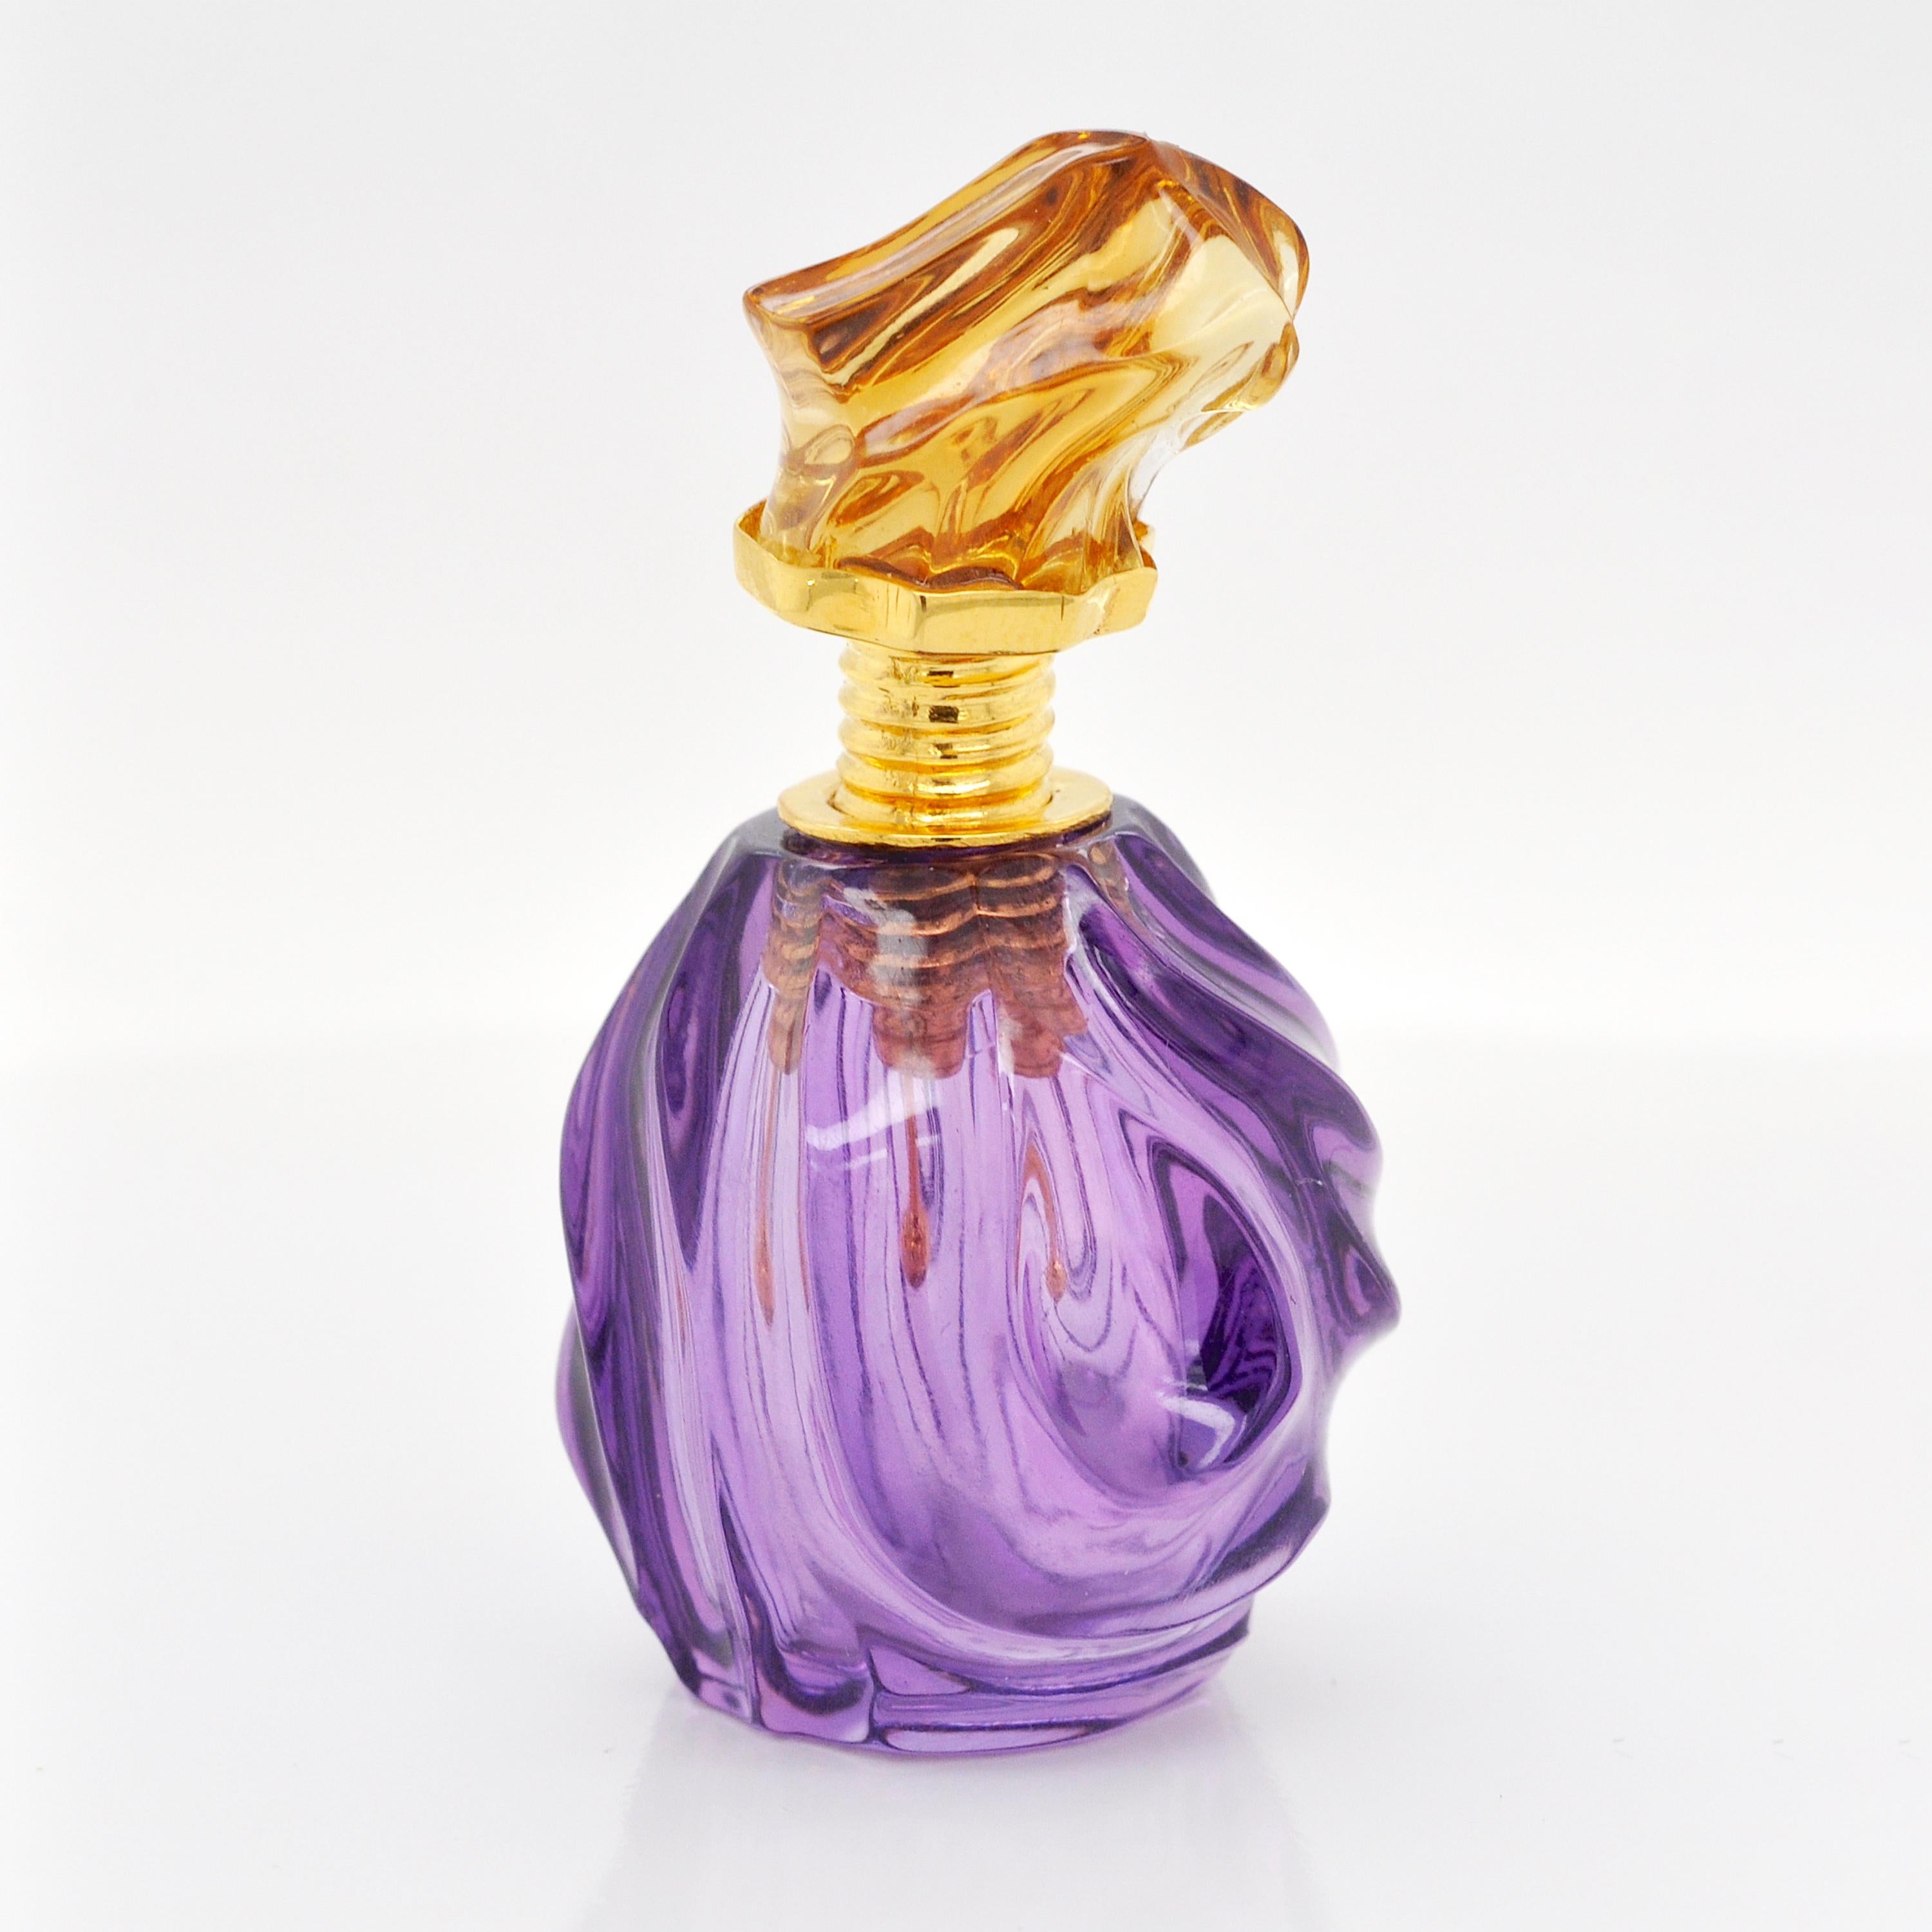 Voici un flacon de parfum étonnant, où la simplicité s'allie à la sophistication pour une expérience olfactive inoubliable.

Fabriquée en améthyste, la base présente des vagues abstraites sculptées avec précision, créant un motif hypnotique qui